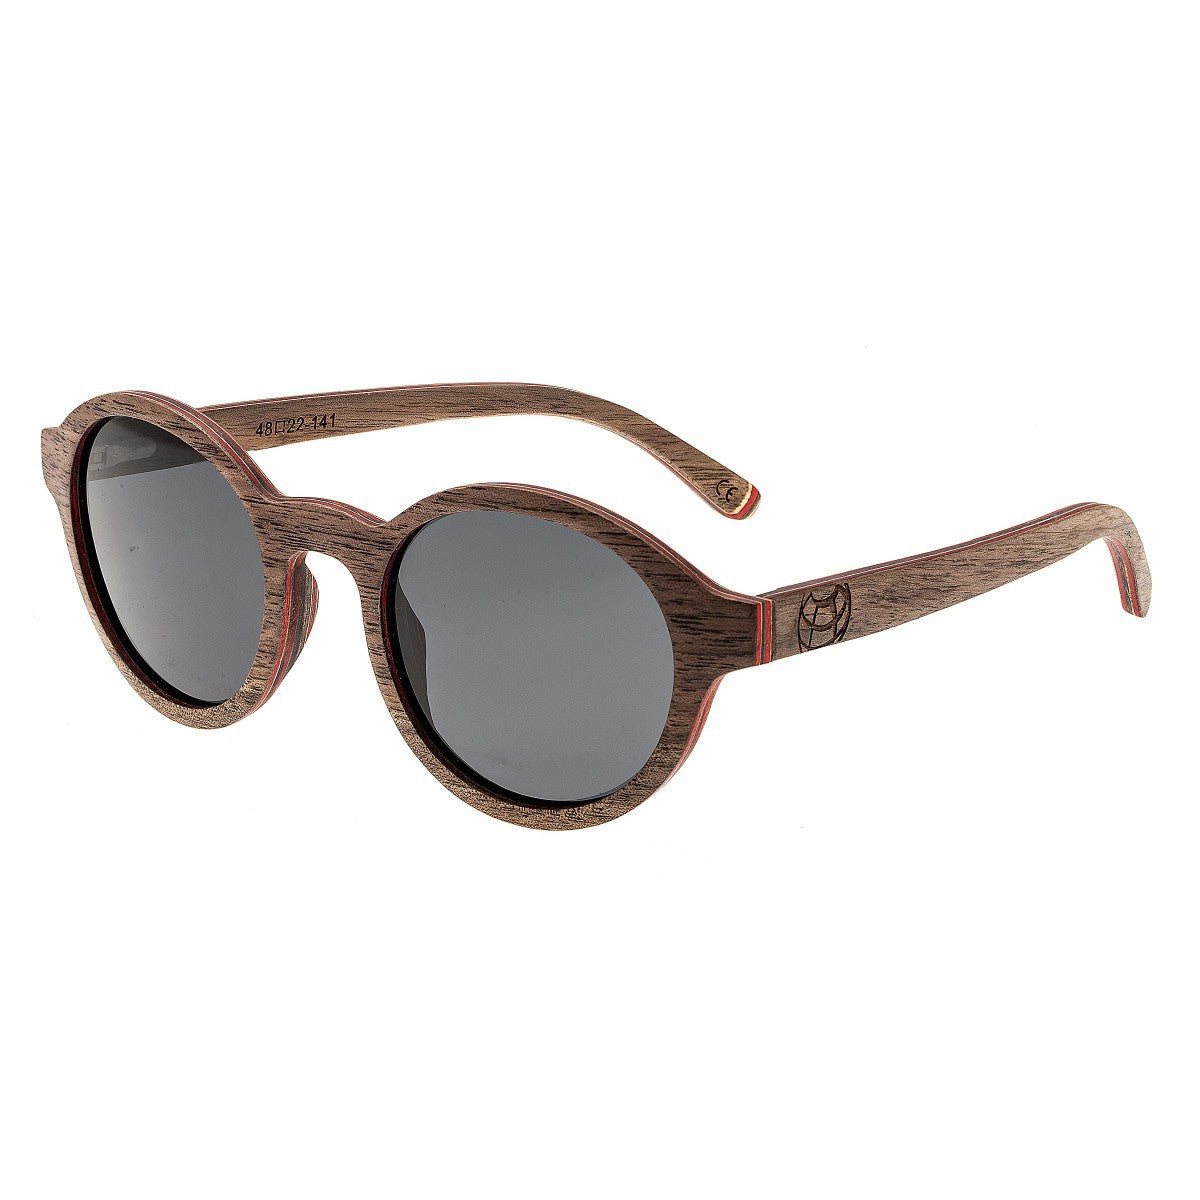 Earth Wood Maho Polarized Sunglasses - Brown Stripe/Black - ESG085B